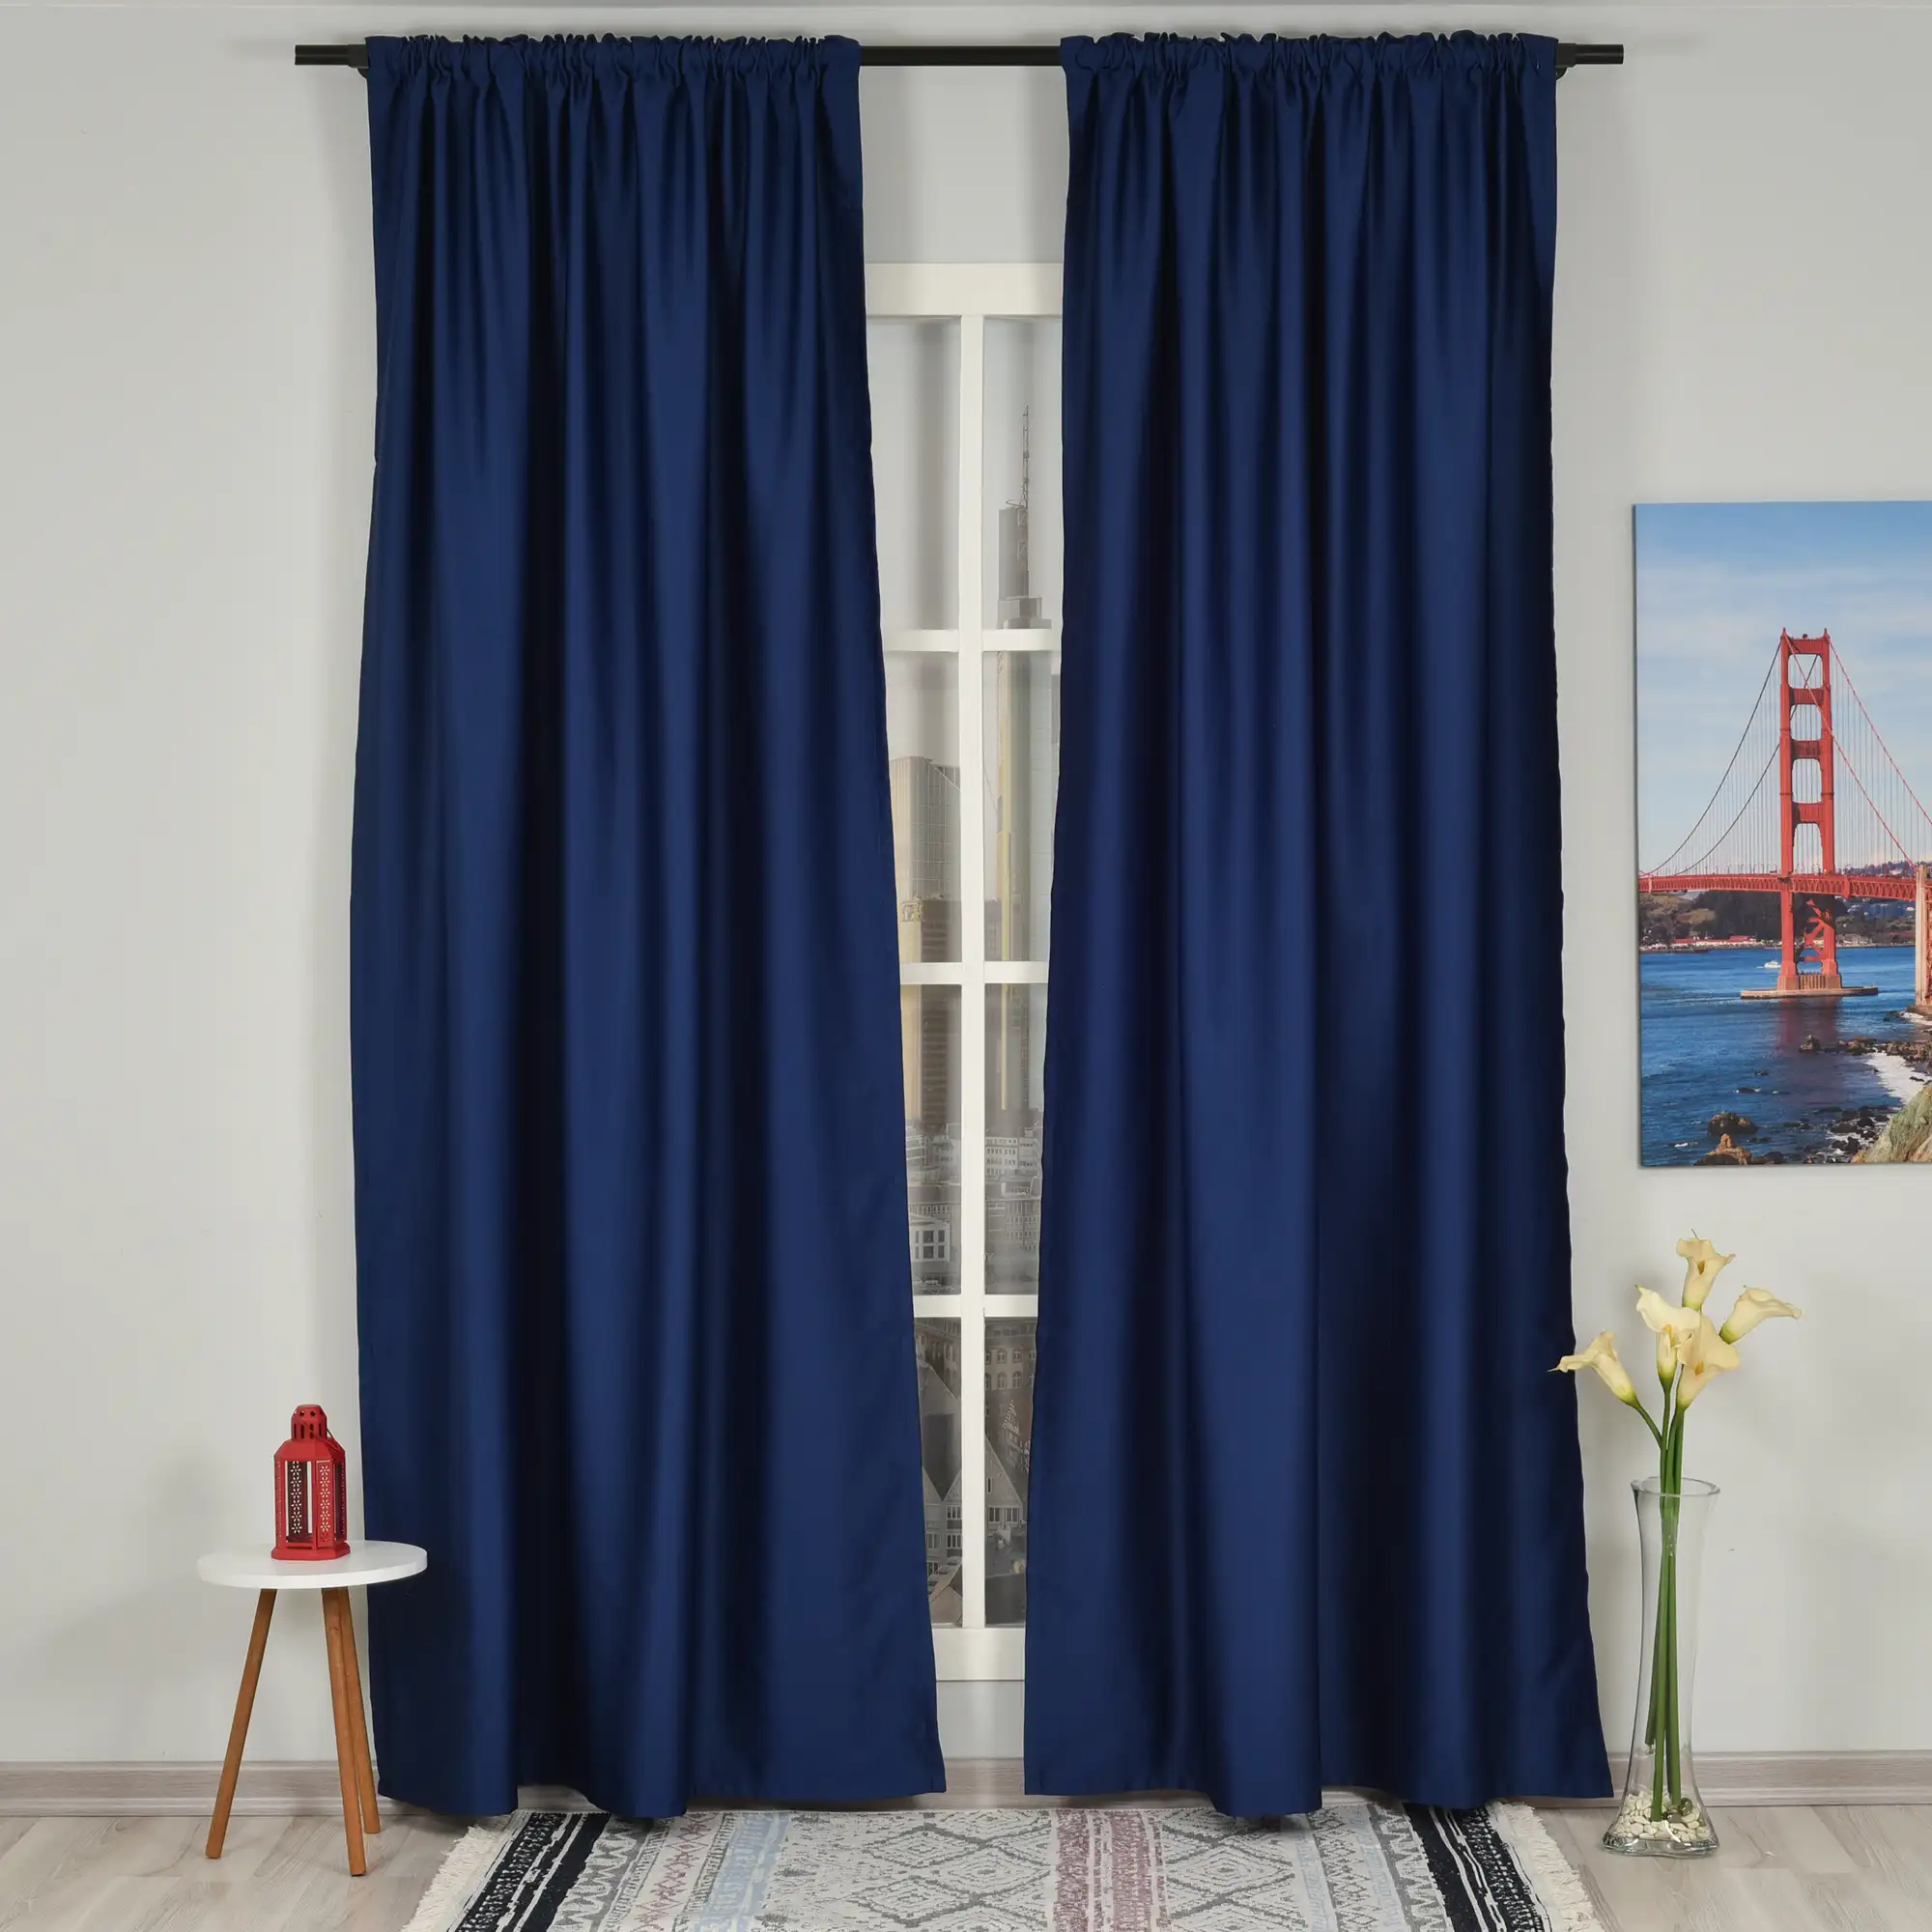 Kraliyet mavi oturma odası için karartma perdeleri dekoratif 2 panel pencere perde toptancılar için Dropshipping